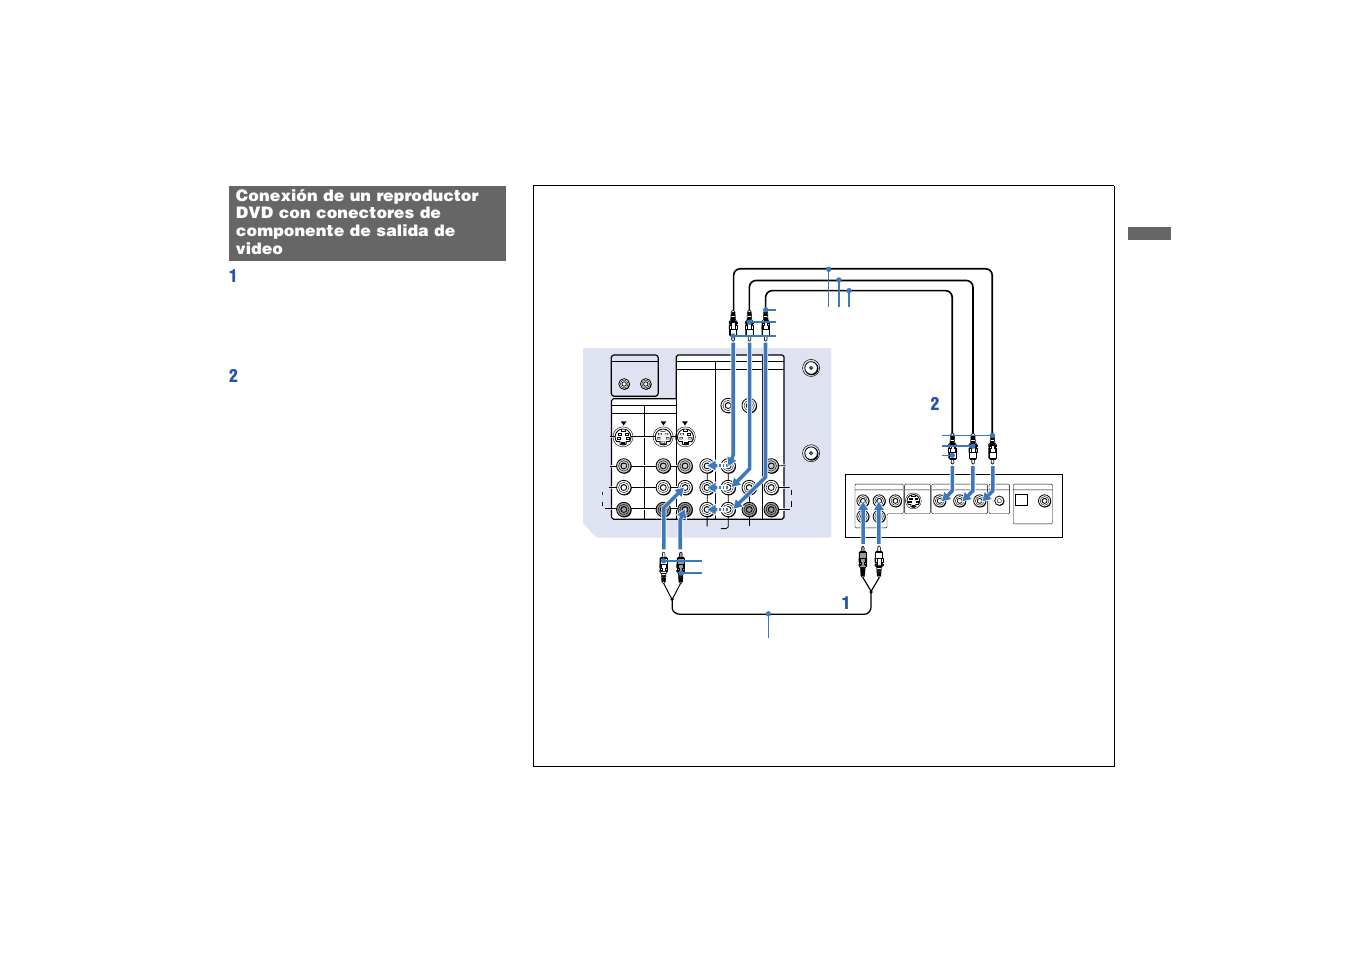 Conexión de un reproductor dvd con, Conectores de componente de salida de video | Sony KP 53HS10 Manual del usuario | Página 23 / 70